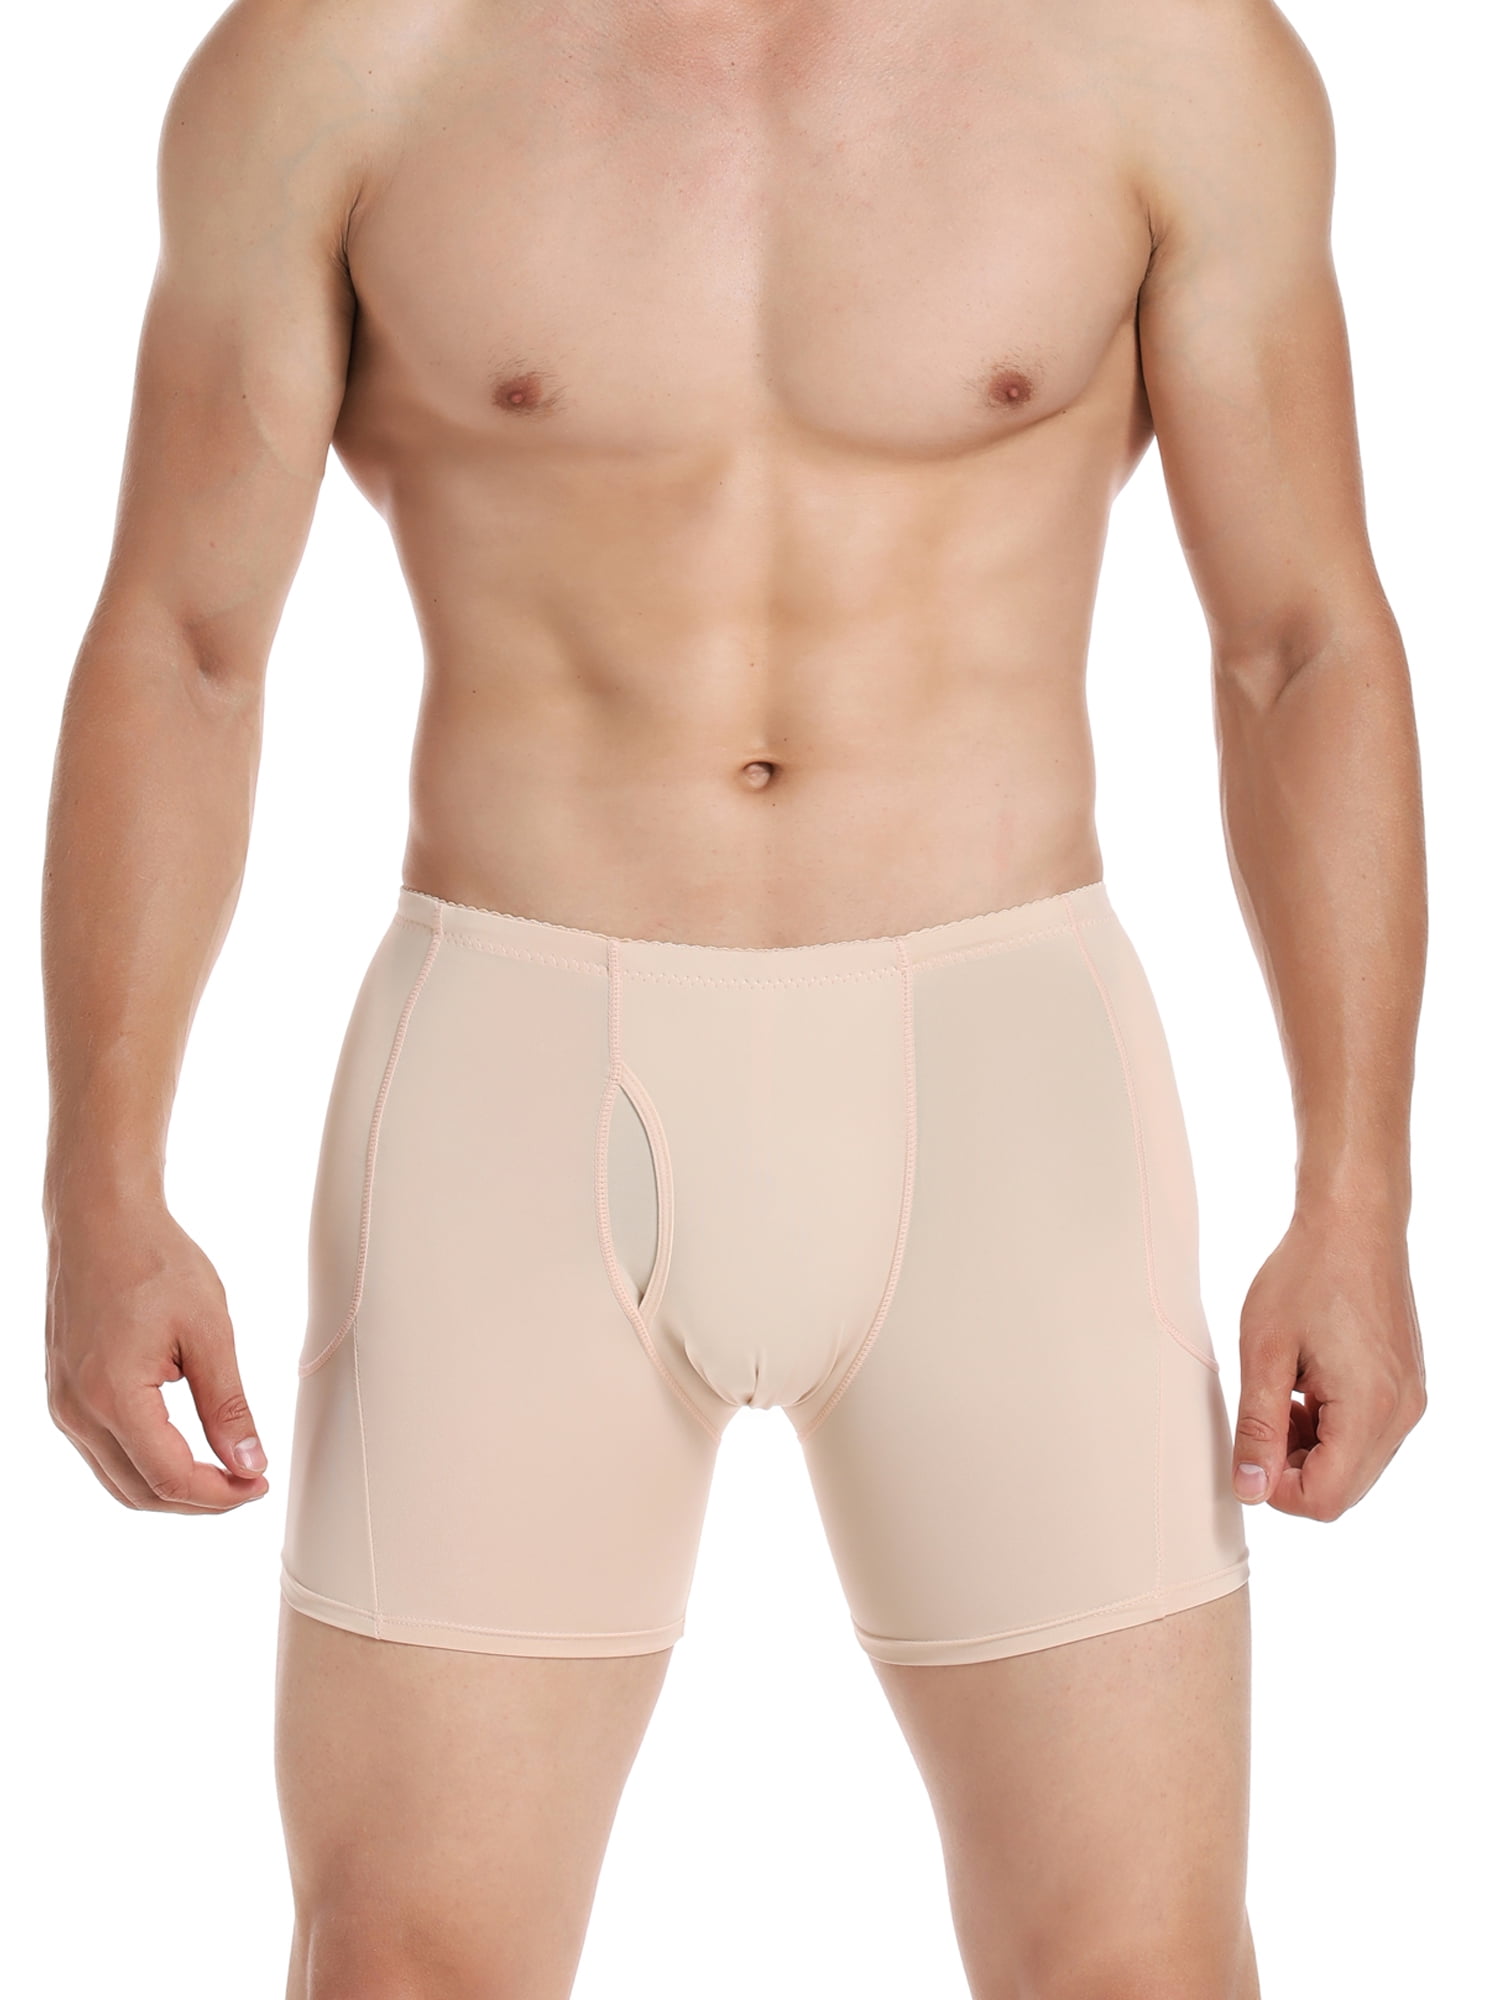 Vaslanda Mens Padded Butt Lifter Underwear Fake Butt Enhancer Shaper Shorts Boxer Briefs with 4 Detachable Butt Pads